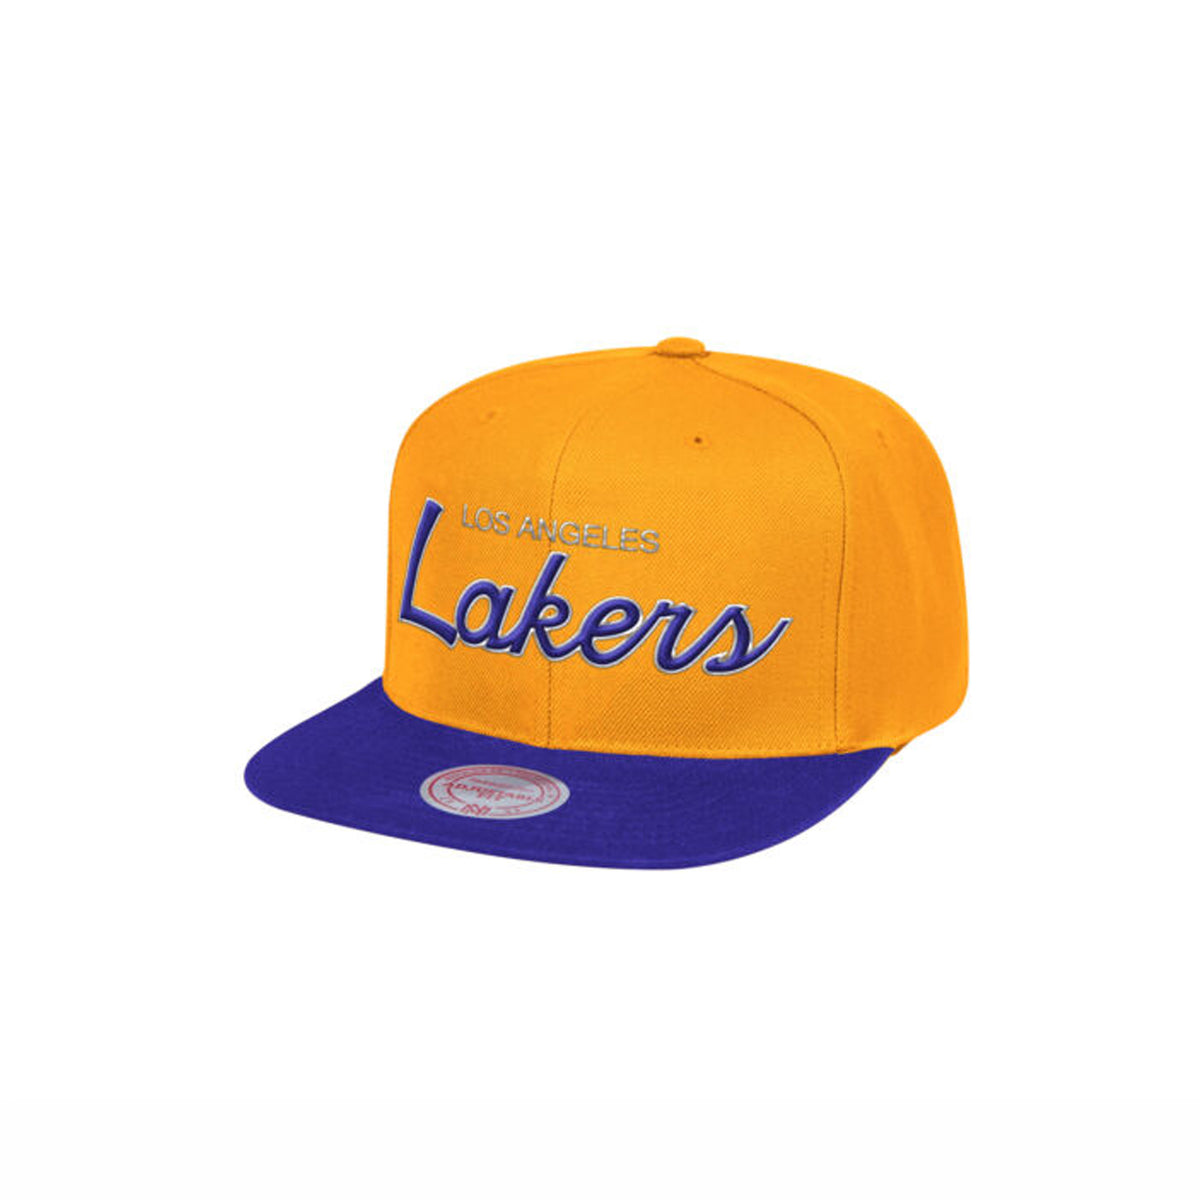 Rookie Kobe Bryant 8 Hat Dad Cap Snapback 24 NBA Los Angeles 